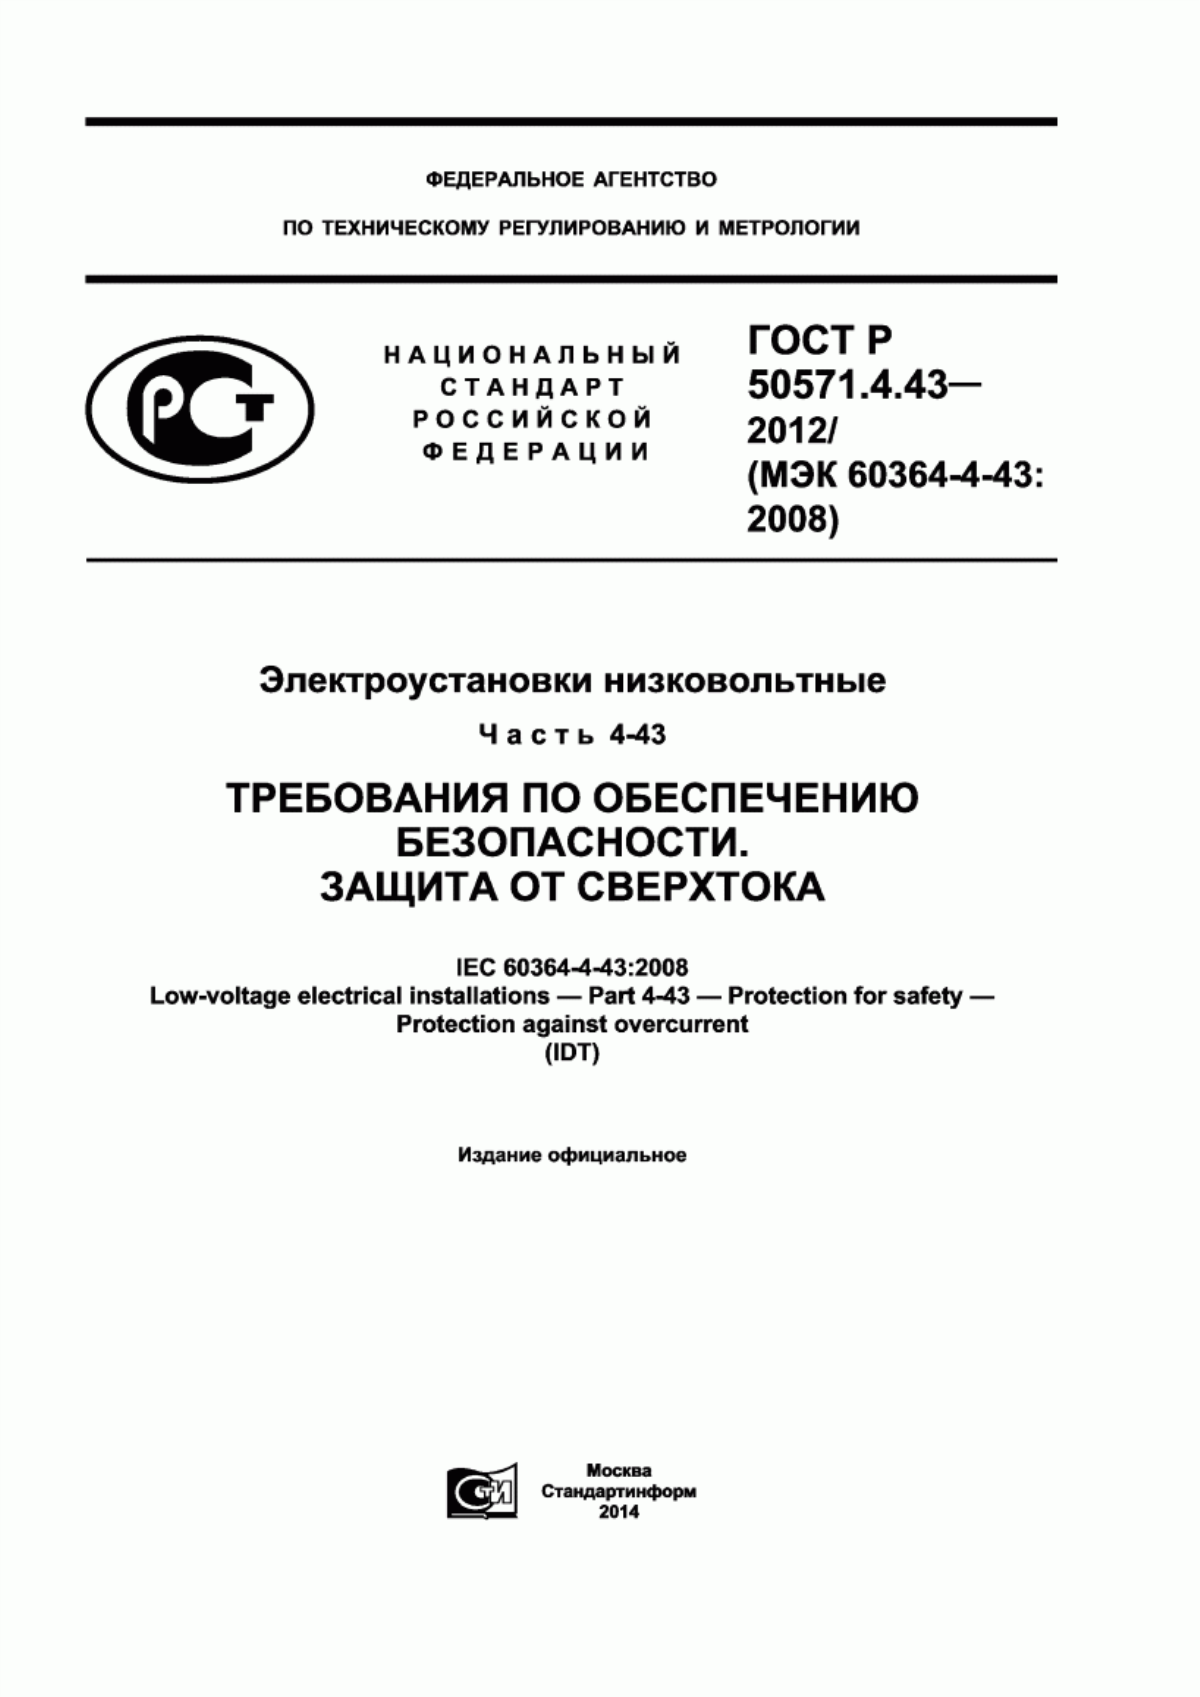 ГОСТ Р 50571.4.43-2012 Электроустановки низковольтные. Часть 4-43. Требования по обеспечению безопасности. Защита от сверхтока